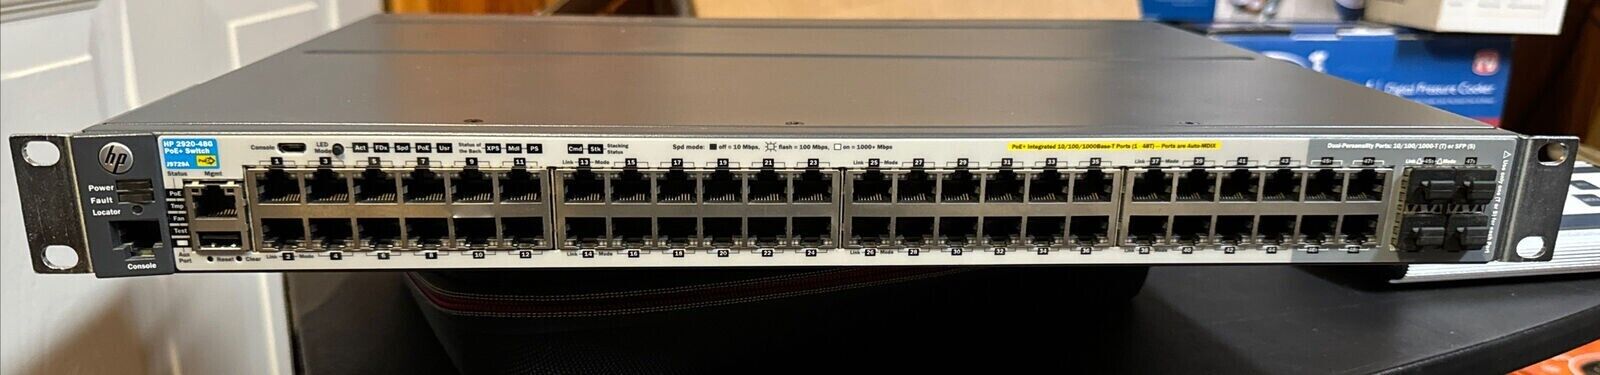 HP  2920-48G PoE+ 48-Port Networking Switch J9729A w/ Rack Ears